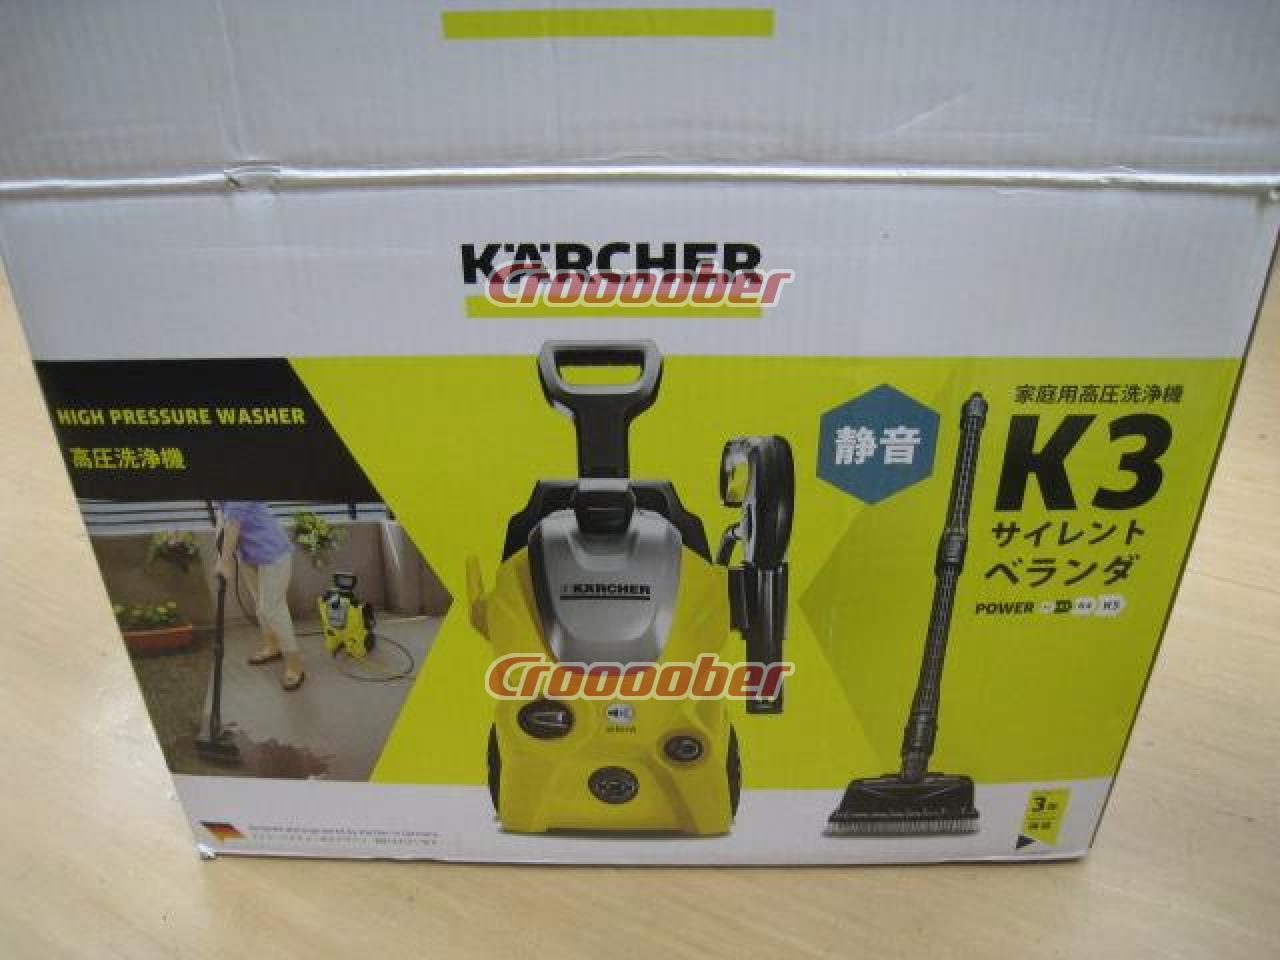 Lijkenhuis Brein restjes KARCHER Household High-pressure Washing Machine K3 Silent Veranda *East  Japan 50Hz Only | Car Wash Goods | Croooober